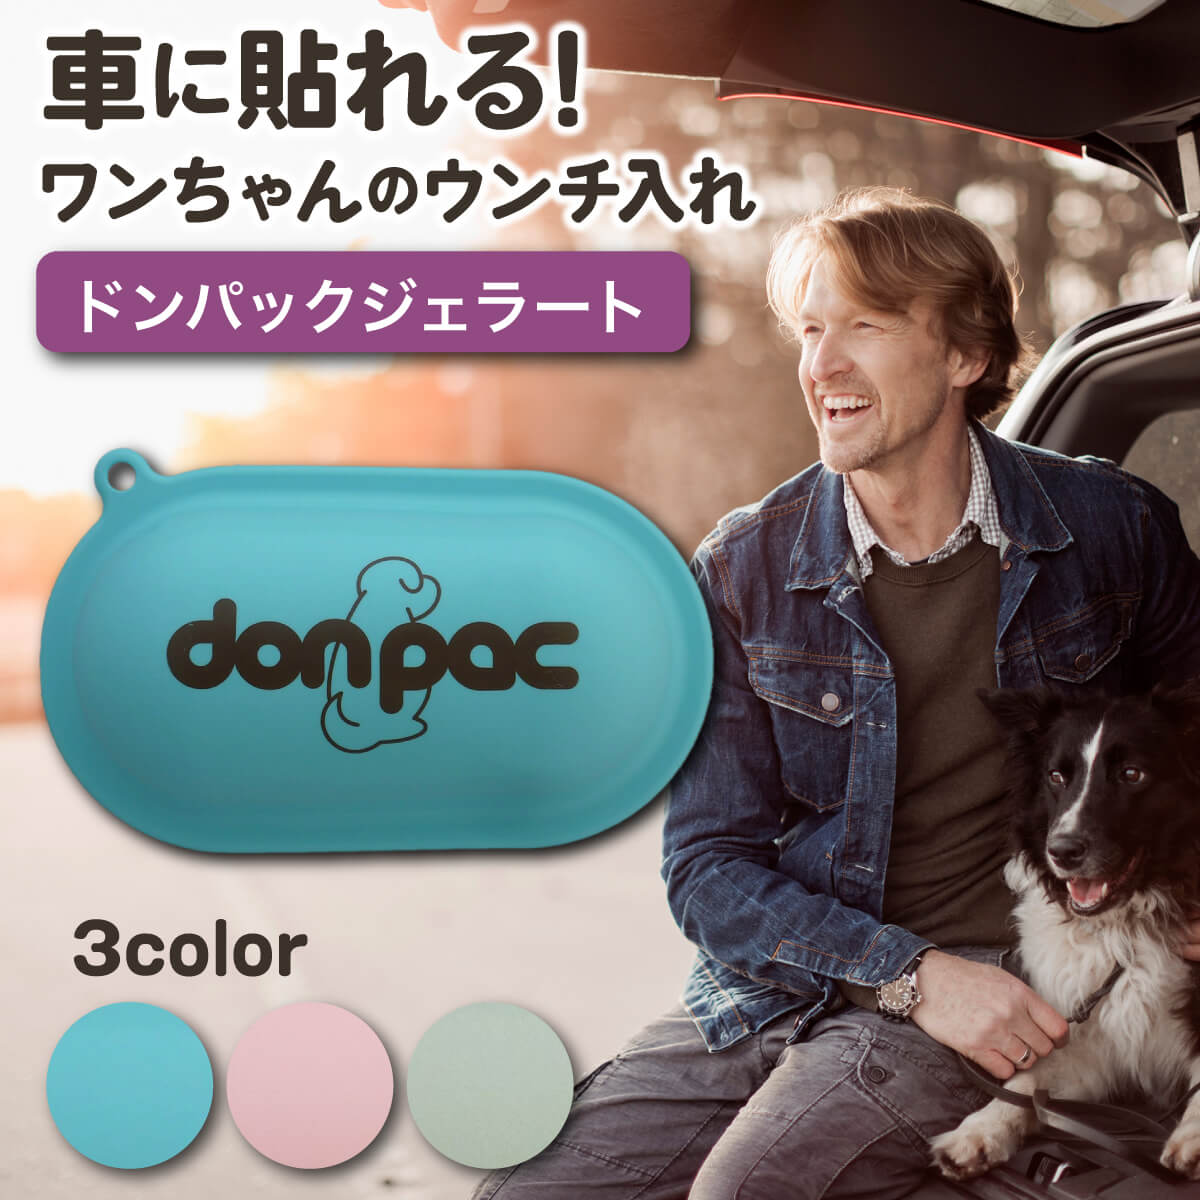 ドンパック ジェラート don-pac 車 貼れる 臭わない バッグ 犬 ピンク うんち 袋 フン 処理袋 うんち処理袋 犬用 マナー